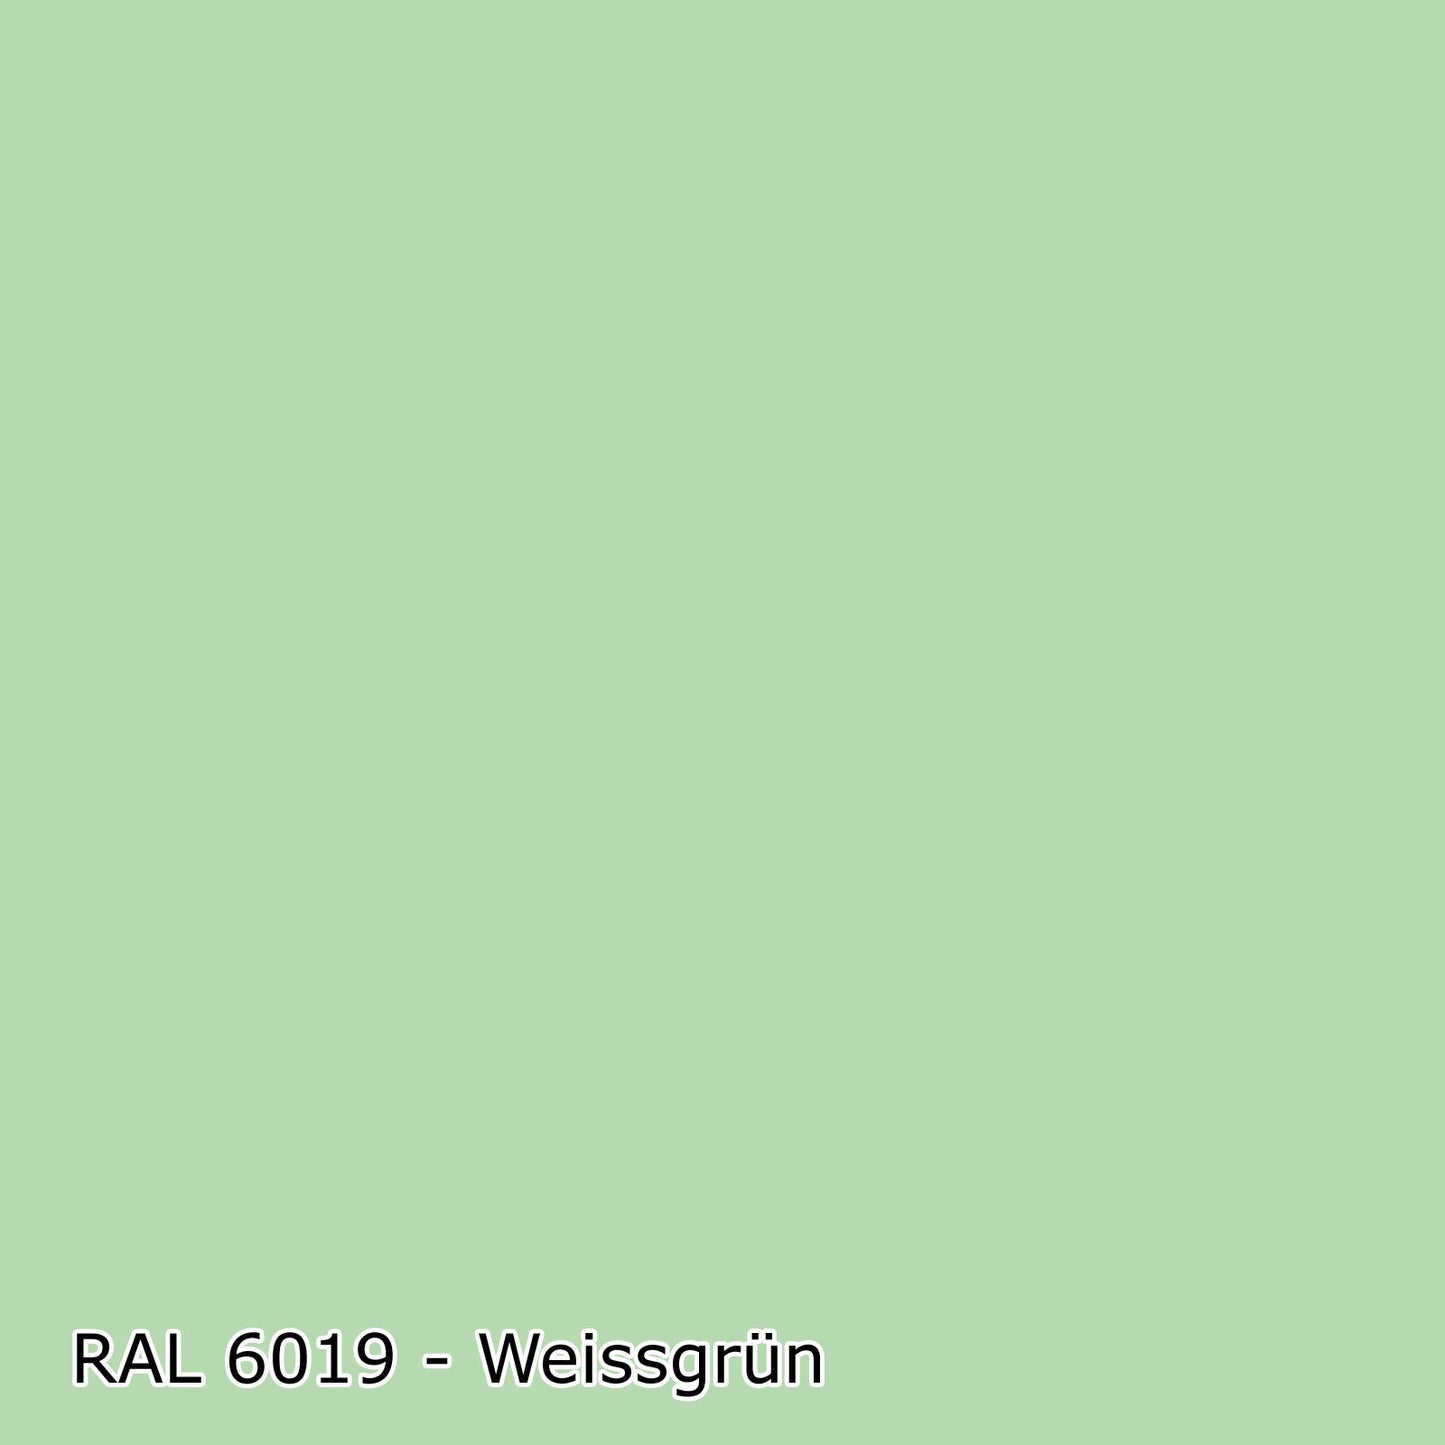 5 L Silikat Fassadenfarbe, Sockelfarbe, (RAL 6008-9018) - MATT